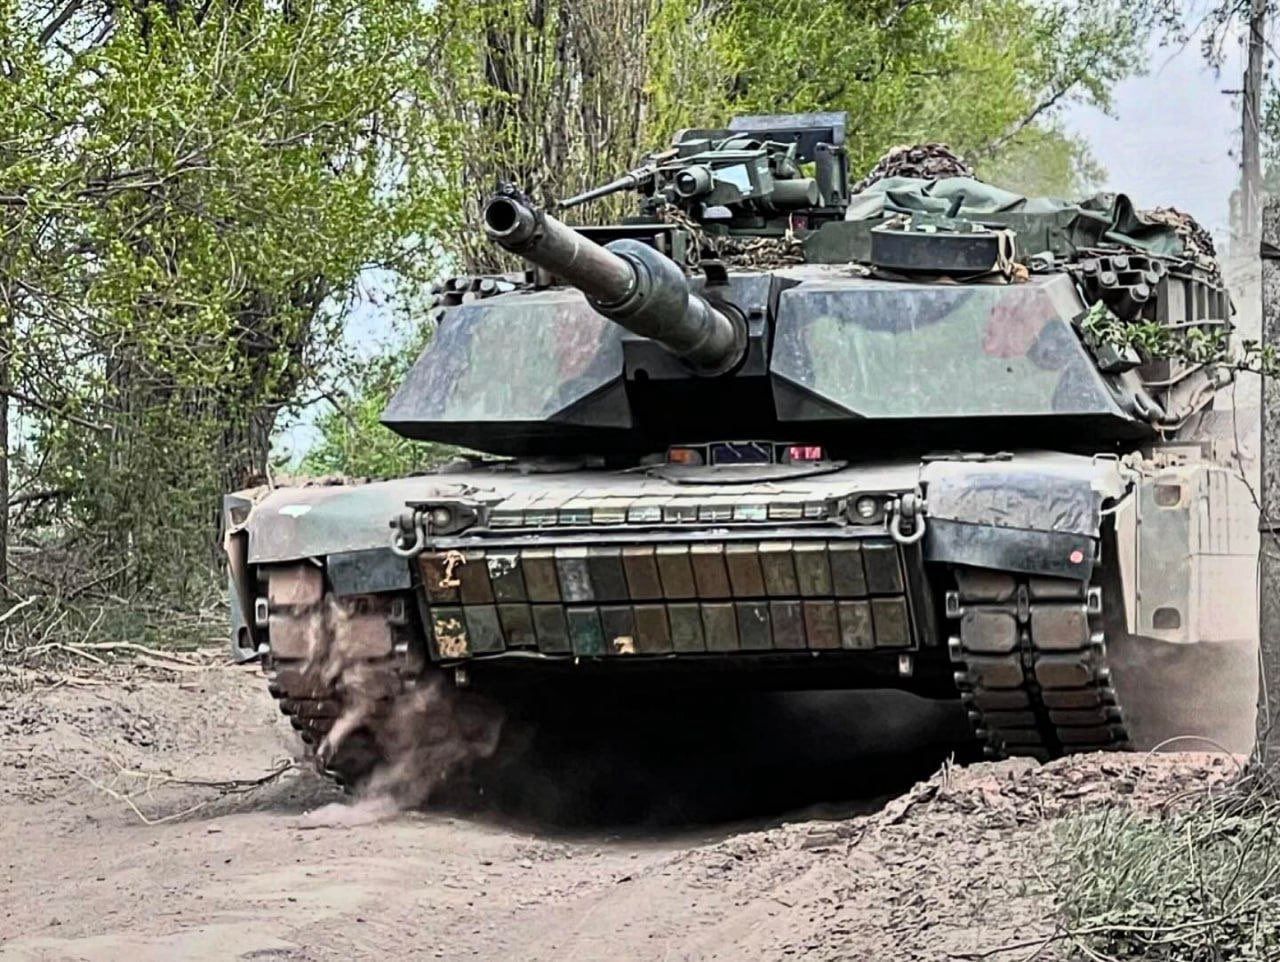 Ukrainian tank commander challenges superiority of Western machines